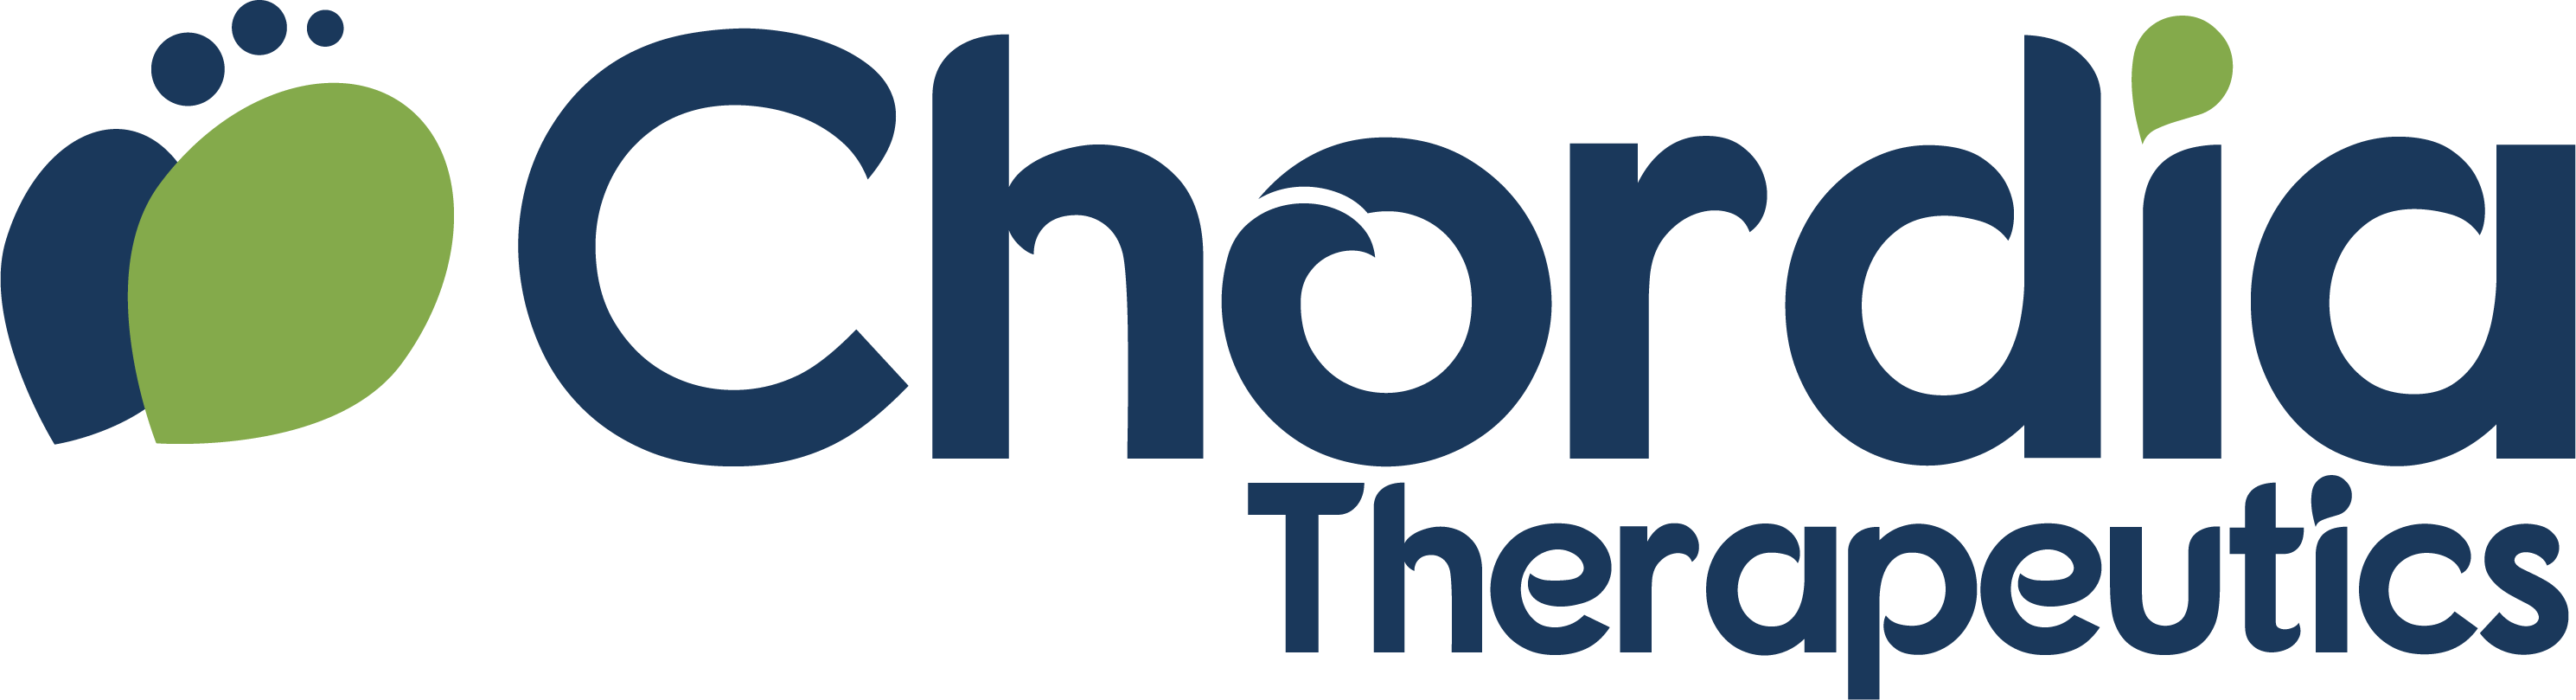 Chordiatherapeutics logo